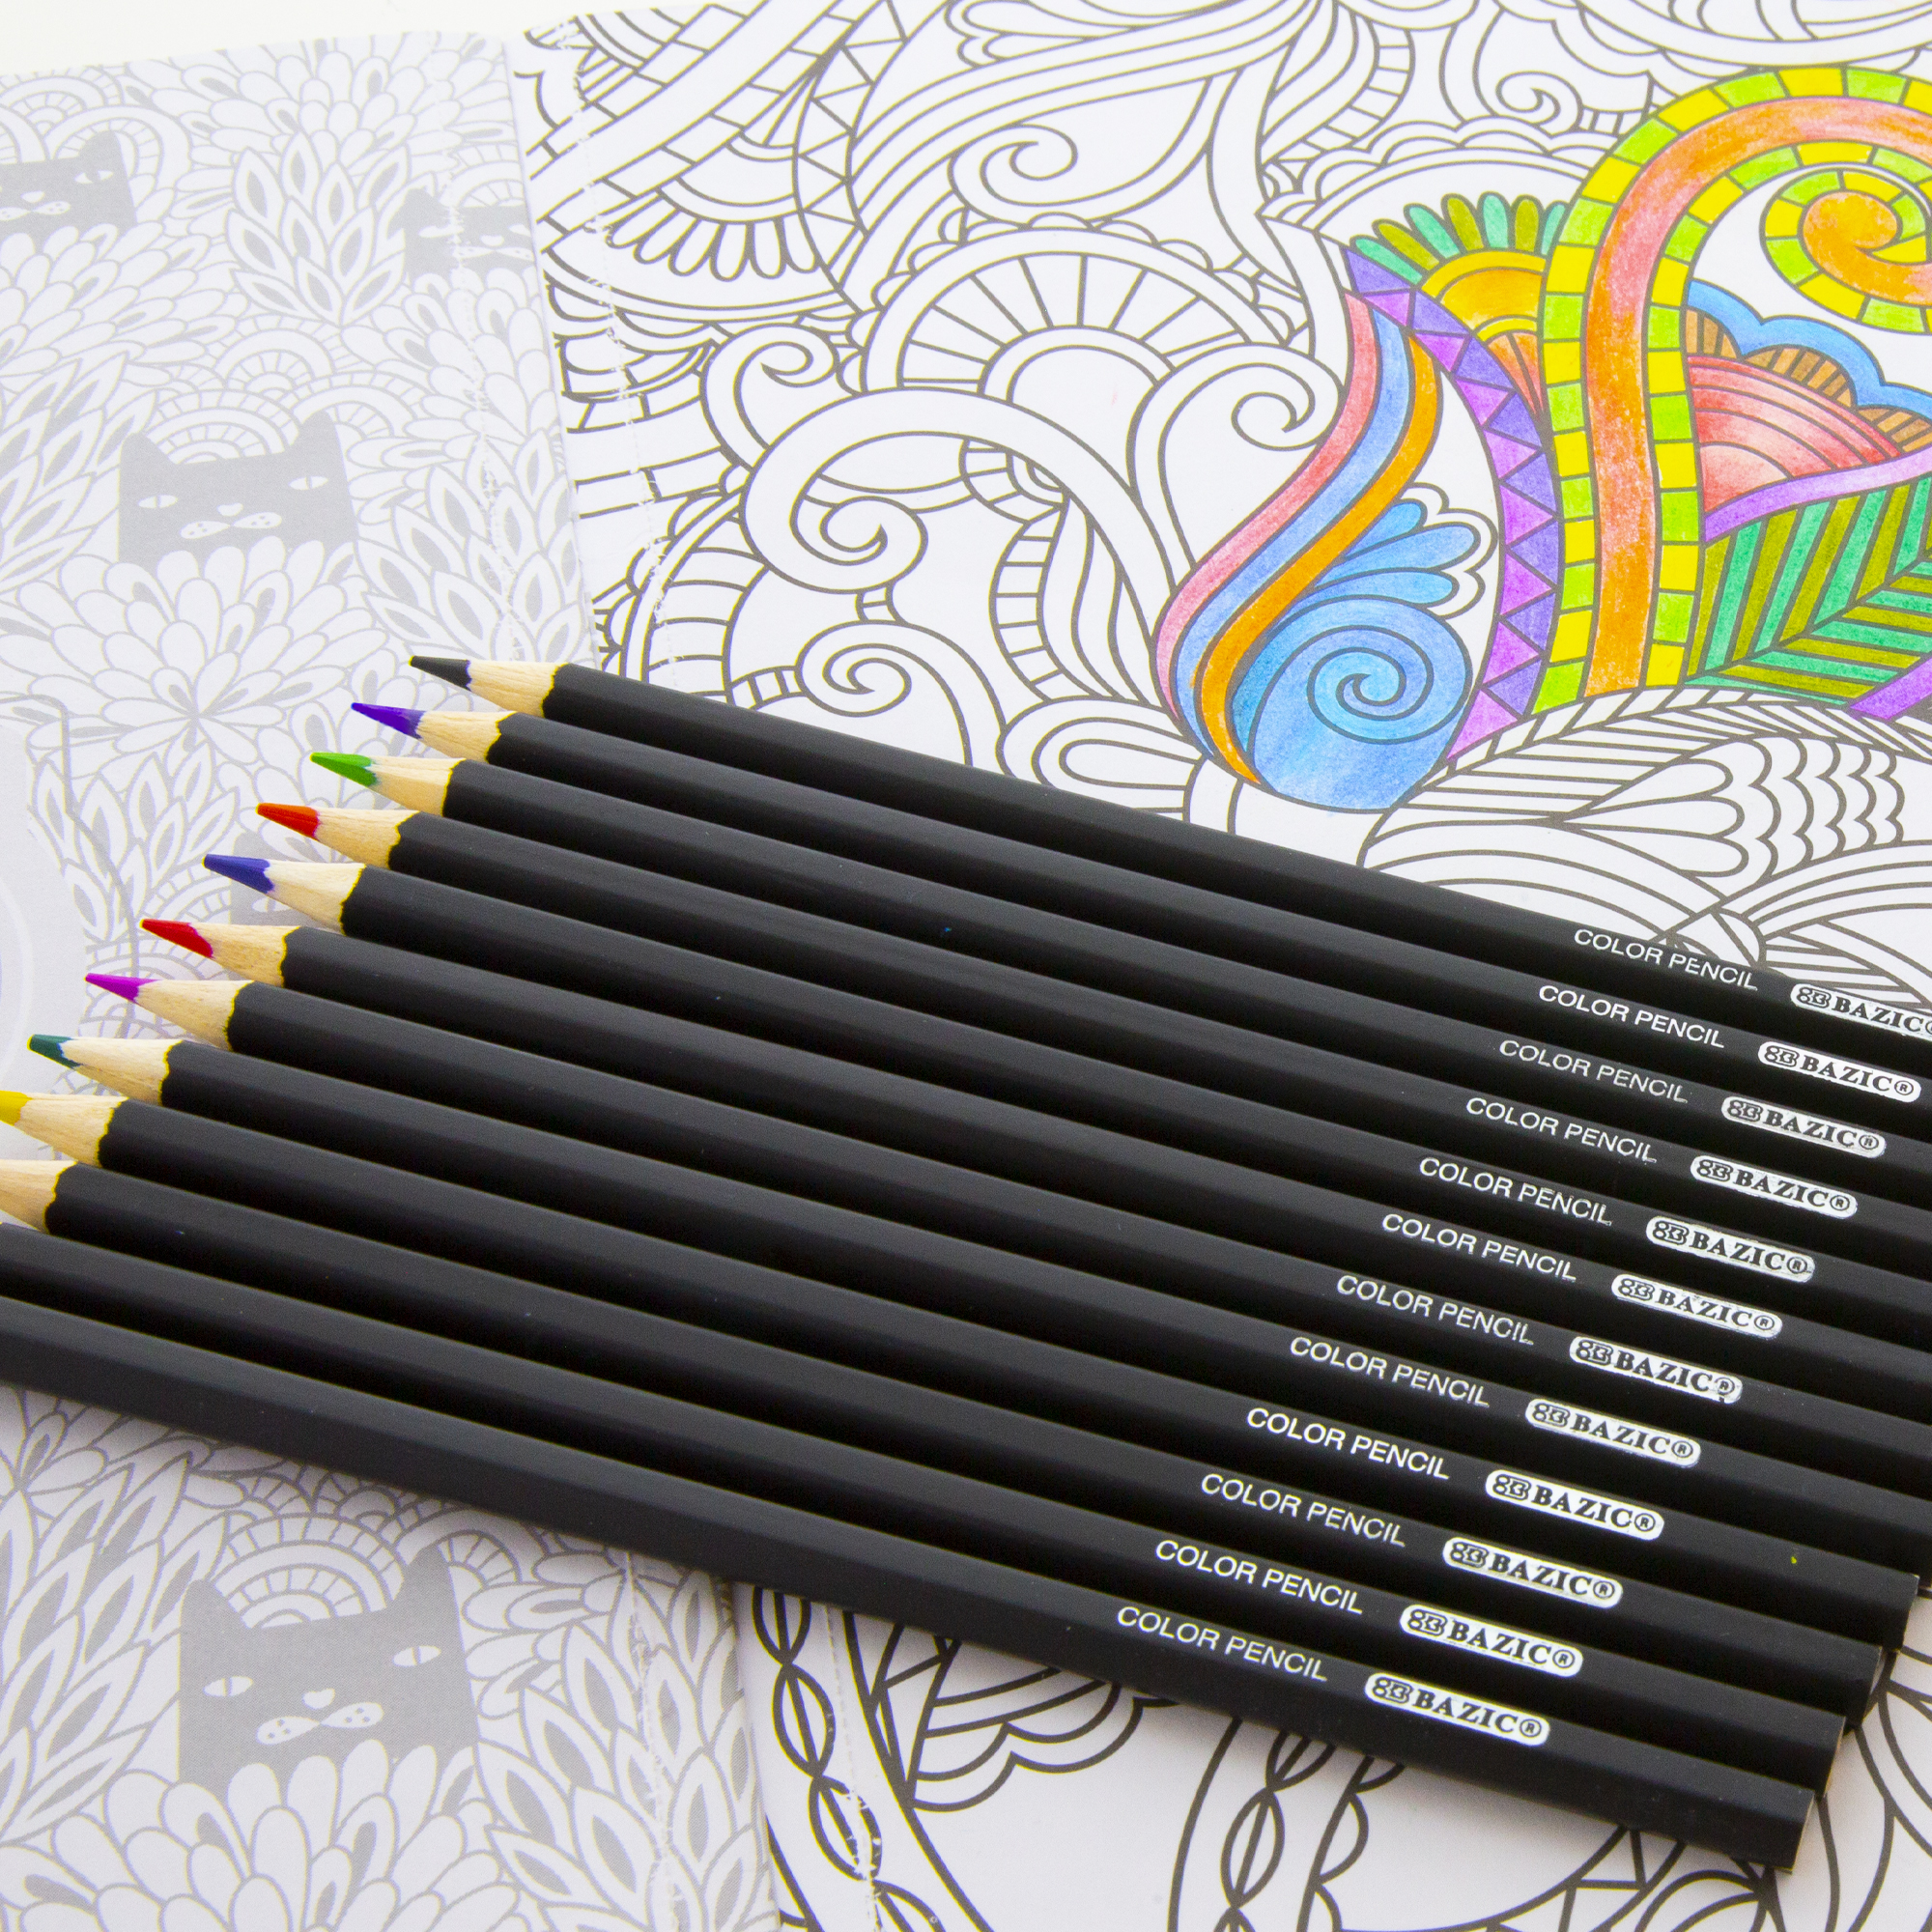 Metal Waterborne Pencil, Metal Colored Pencils, Wax Colored Pencils